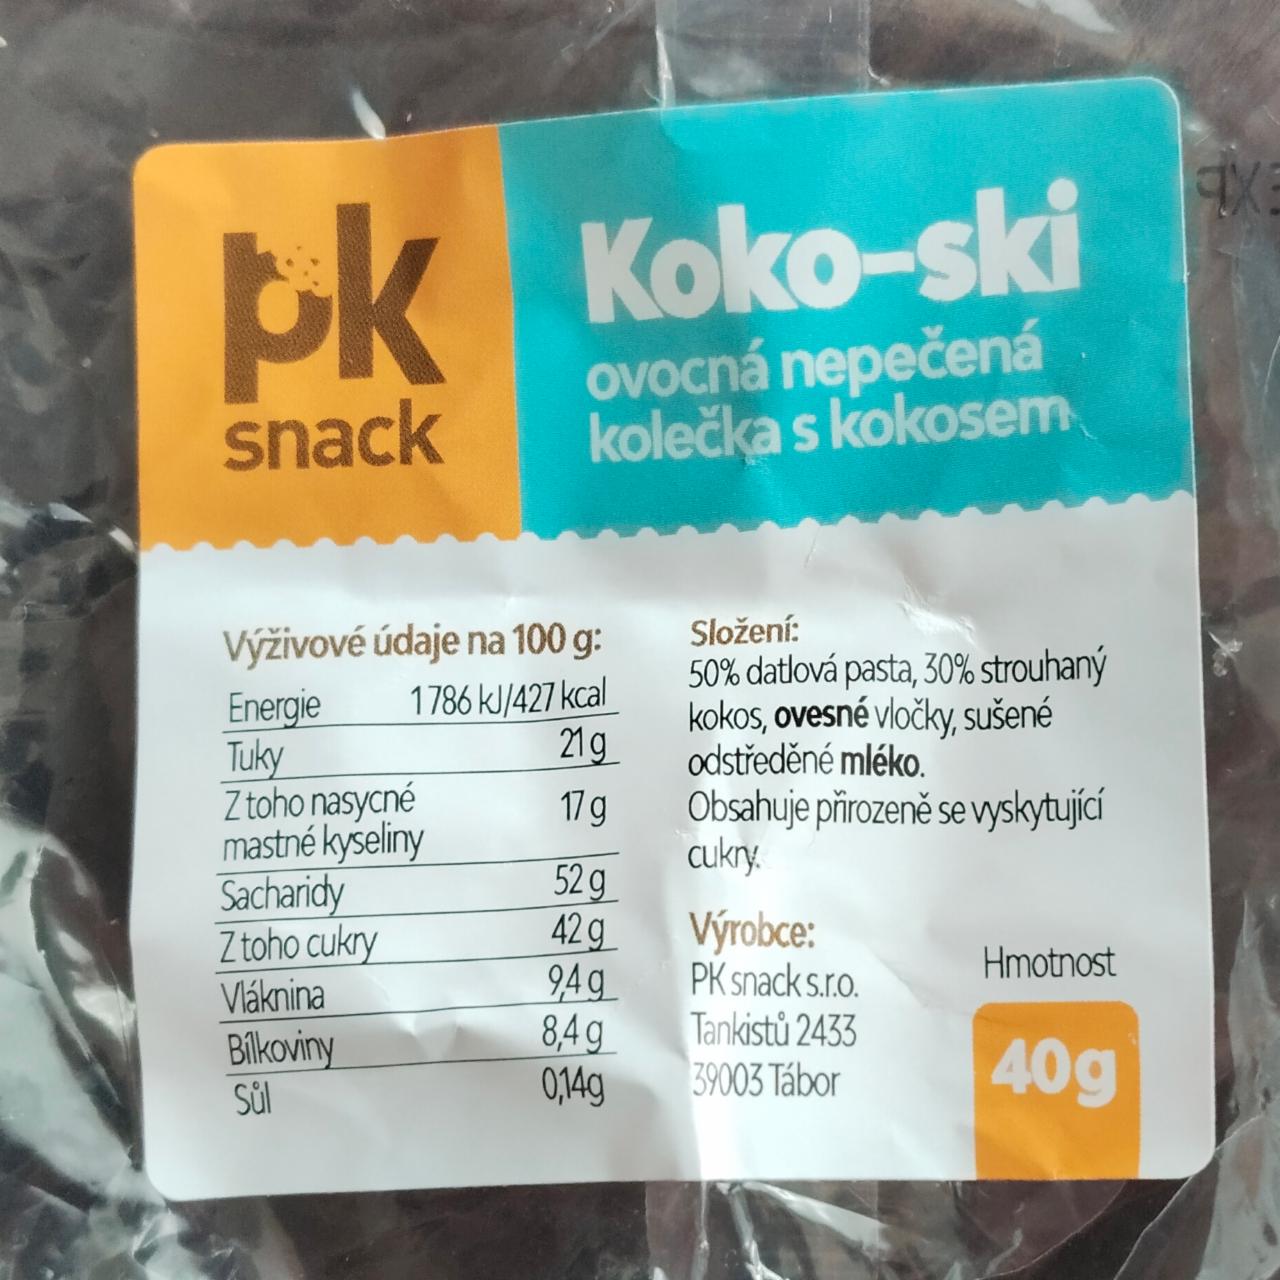 Fotografie - Koko-ski PK snack